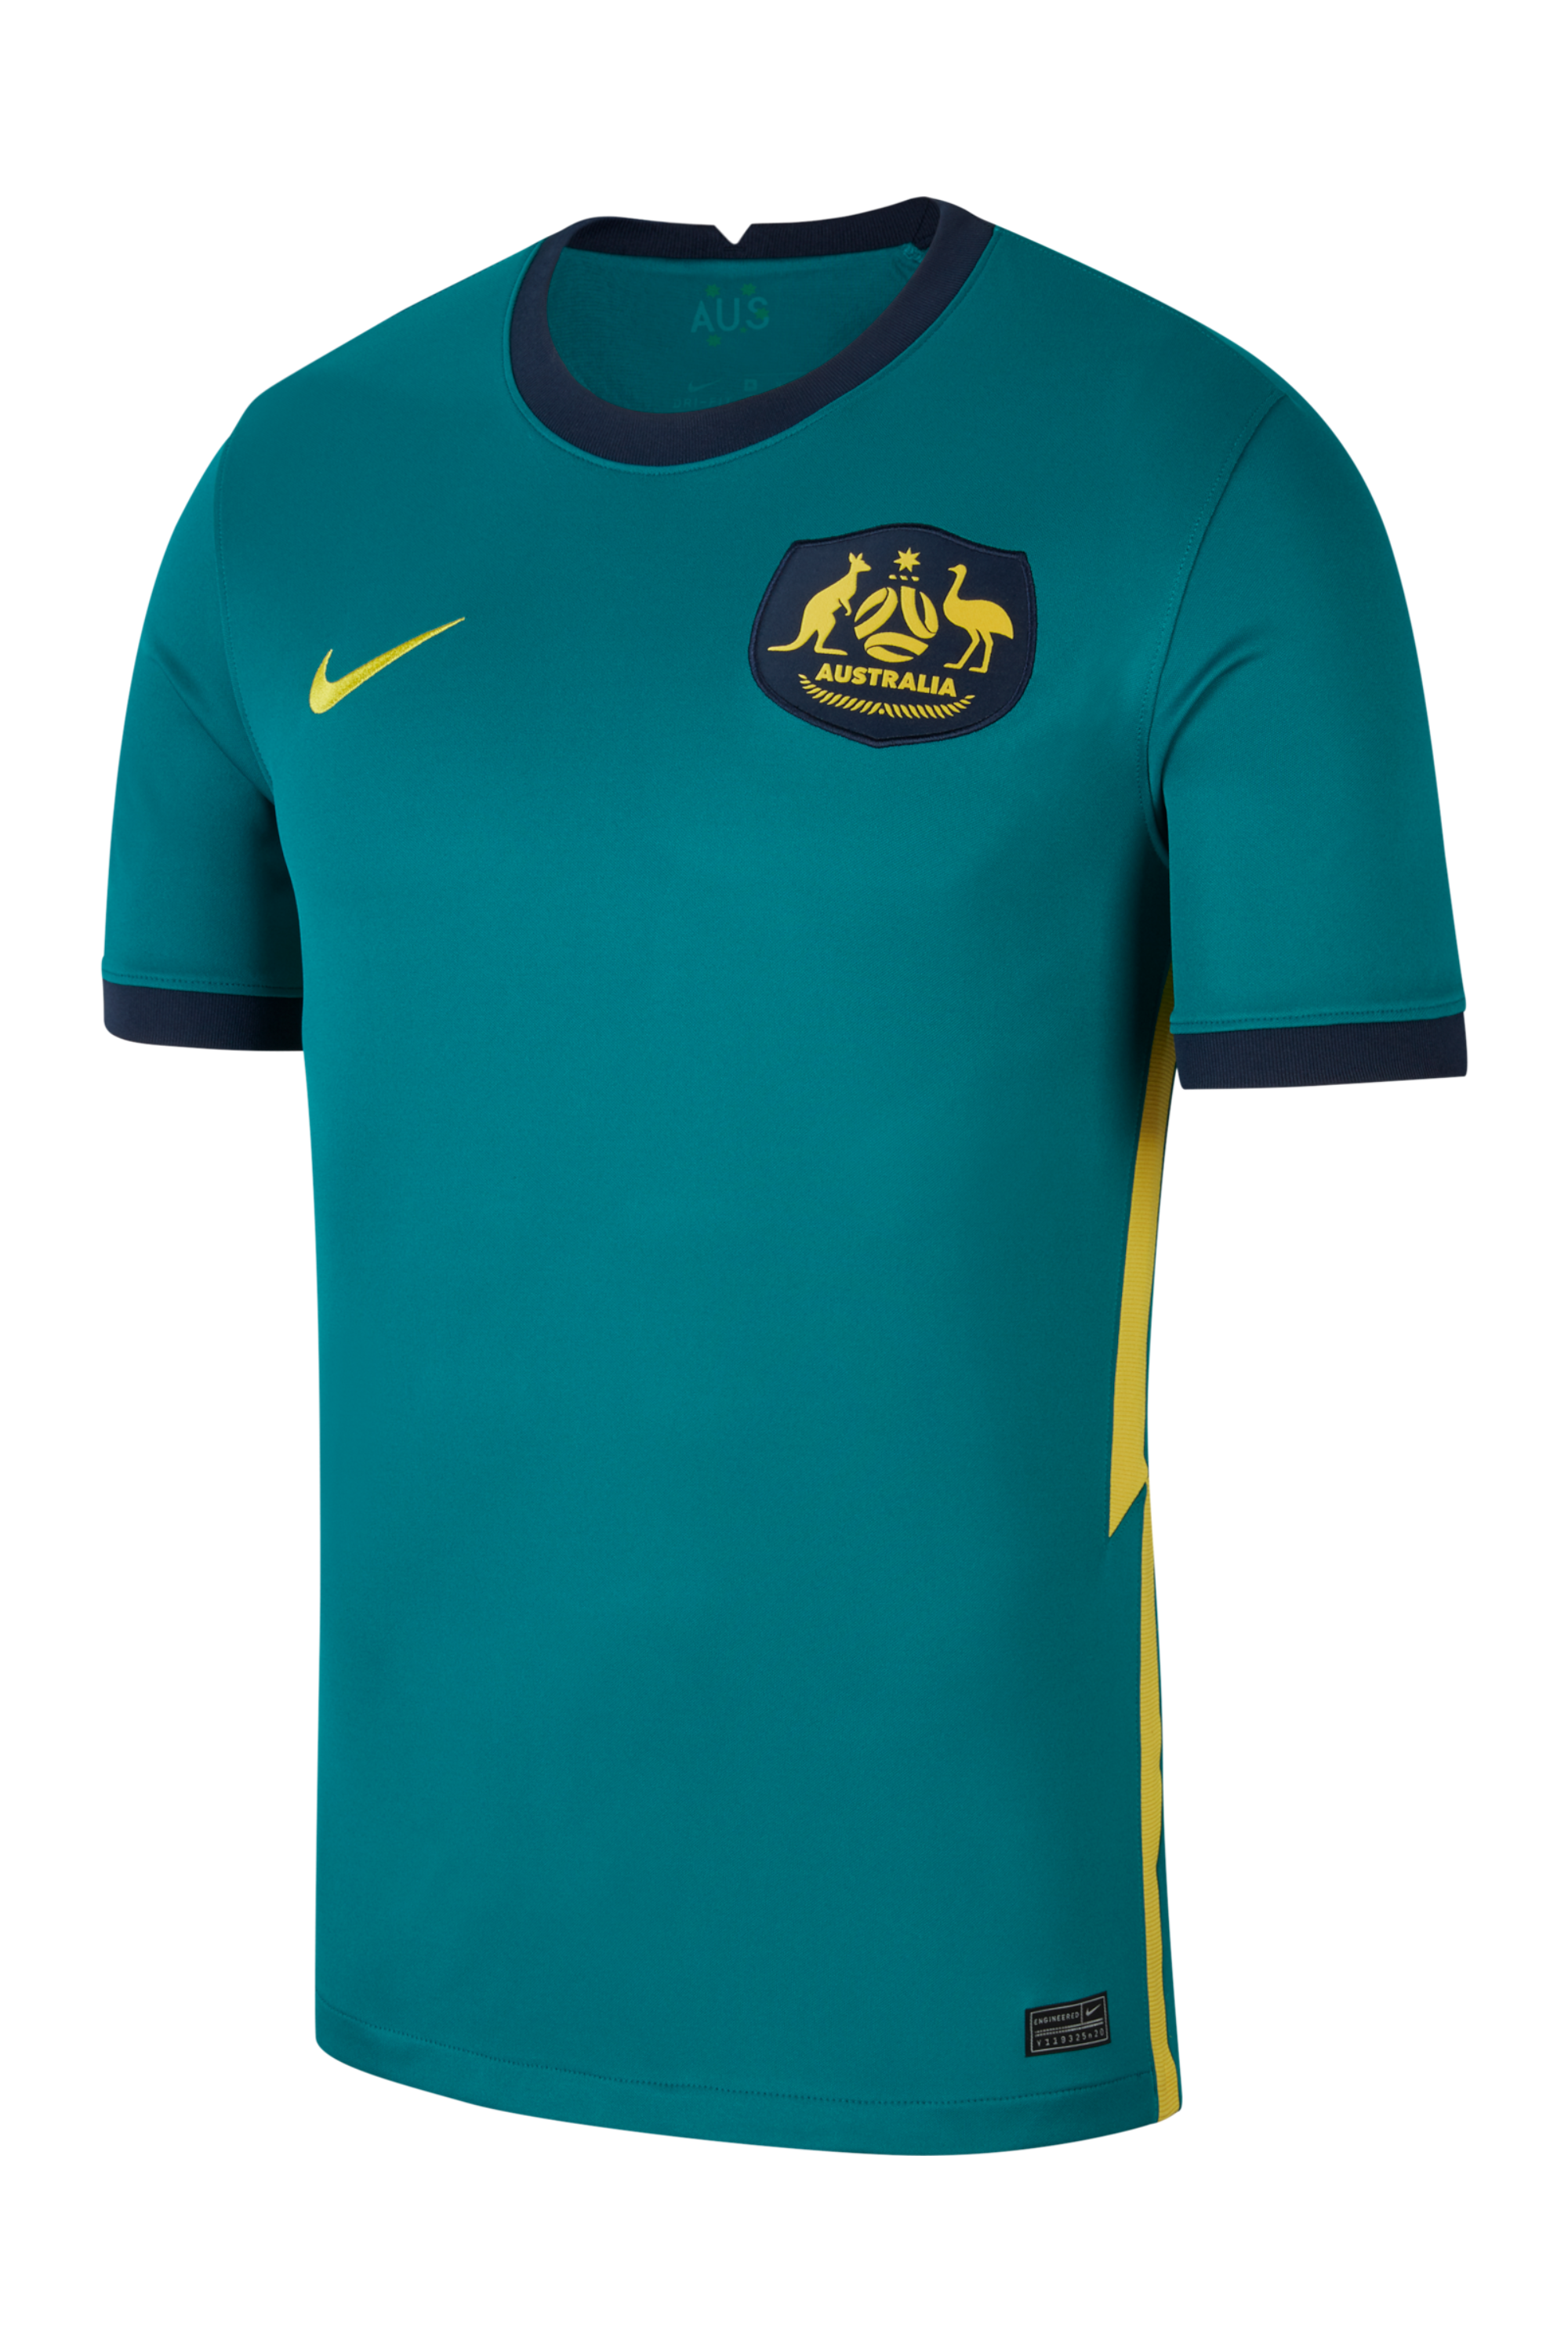 Shirt Nike Australia 2020 Stadium Away 